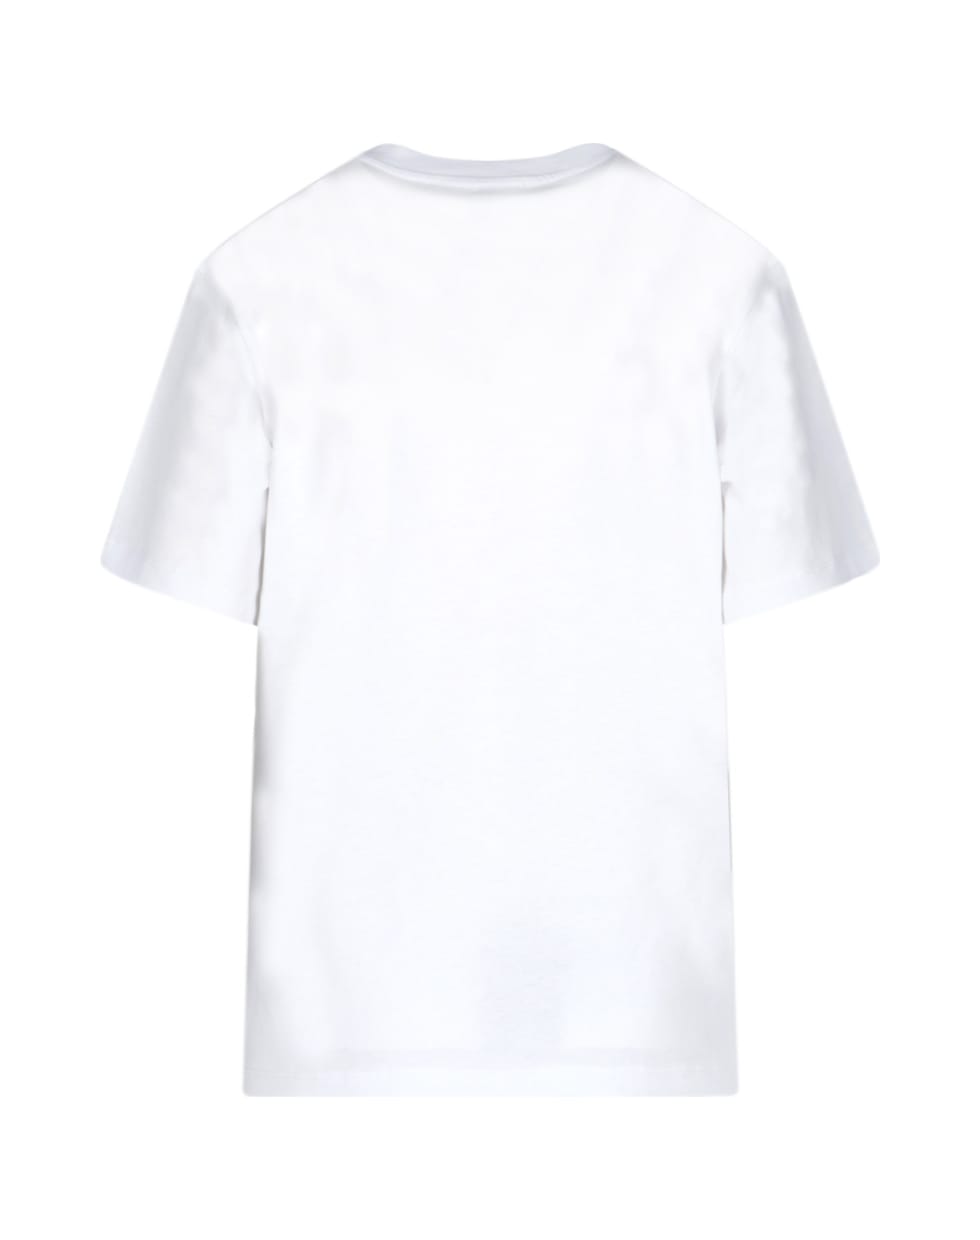 Victoria Beckham T-Shirt - White